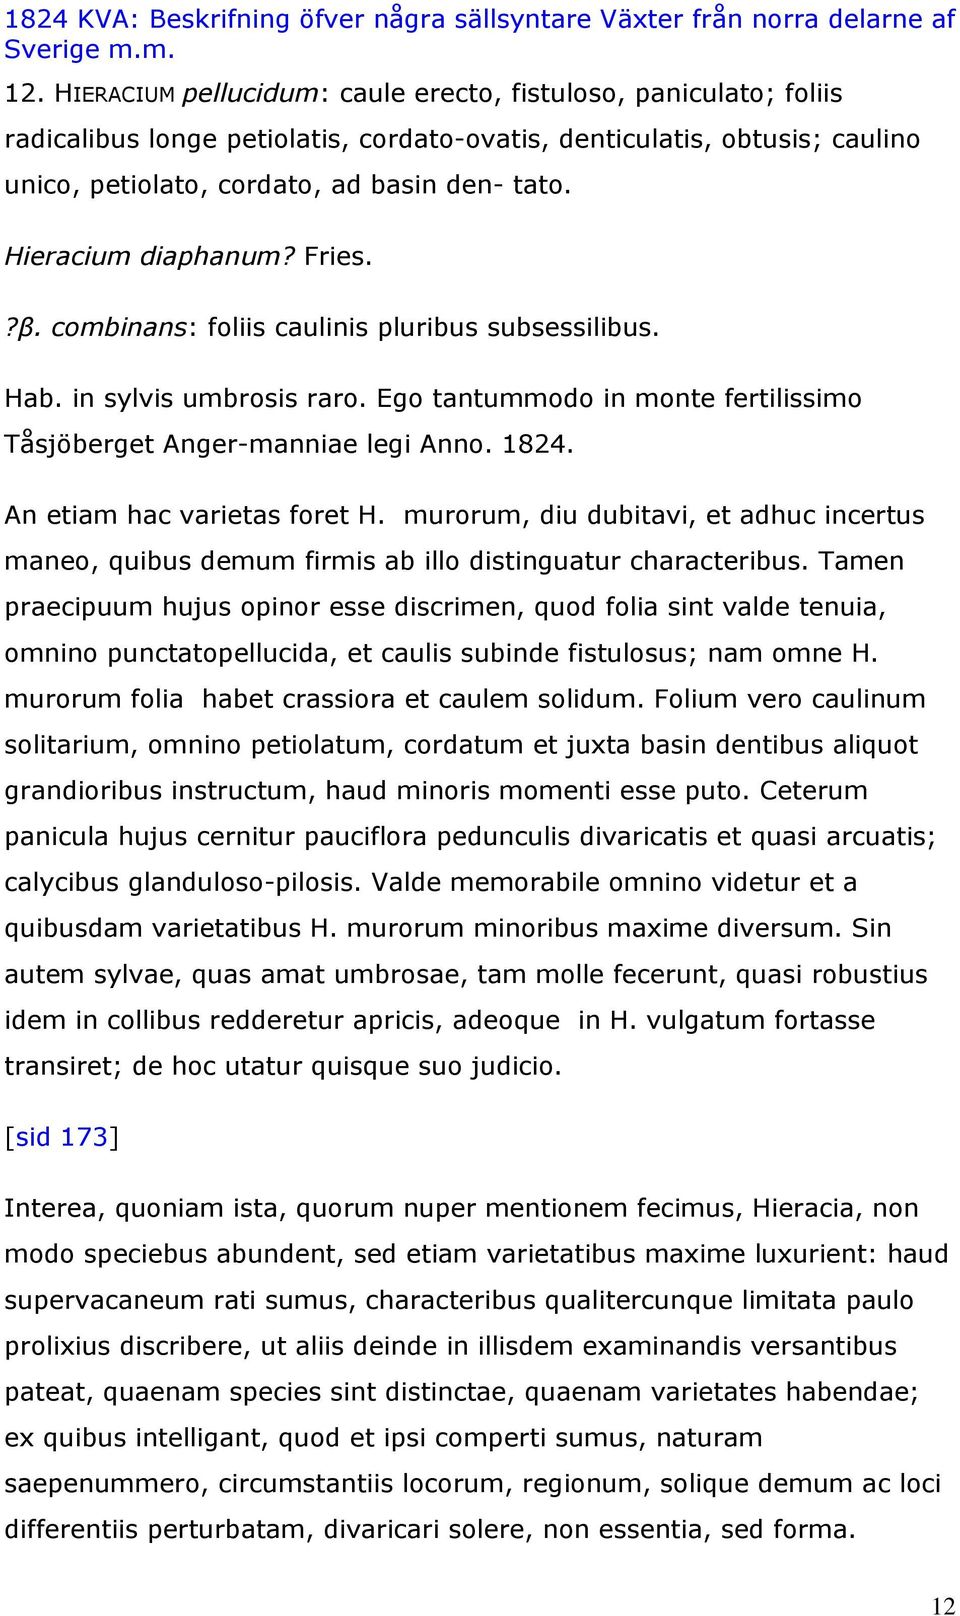 An etiam hac varietas foret H. murorum, diu dubitavi, et adhuc incertus maneo, quibus demum firmis ab illo distinguatur characteribus.